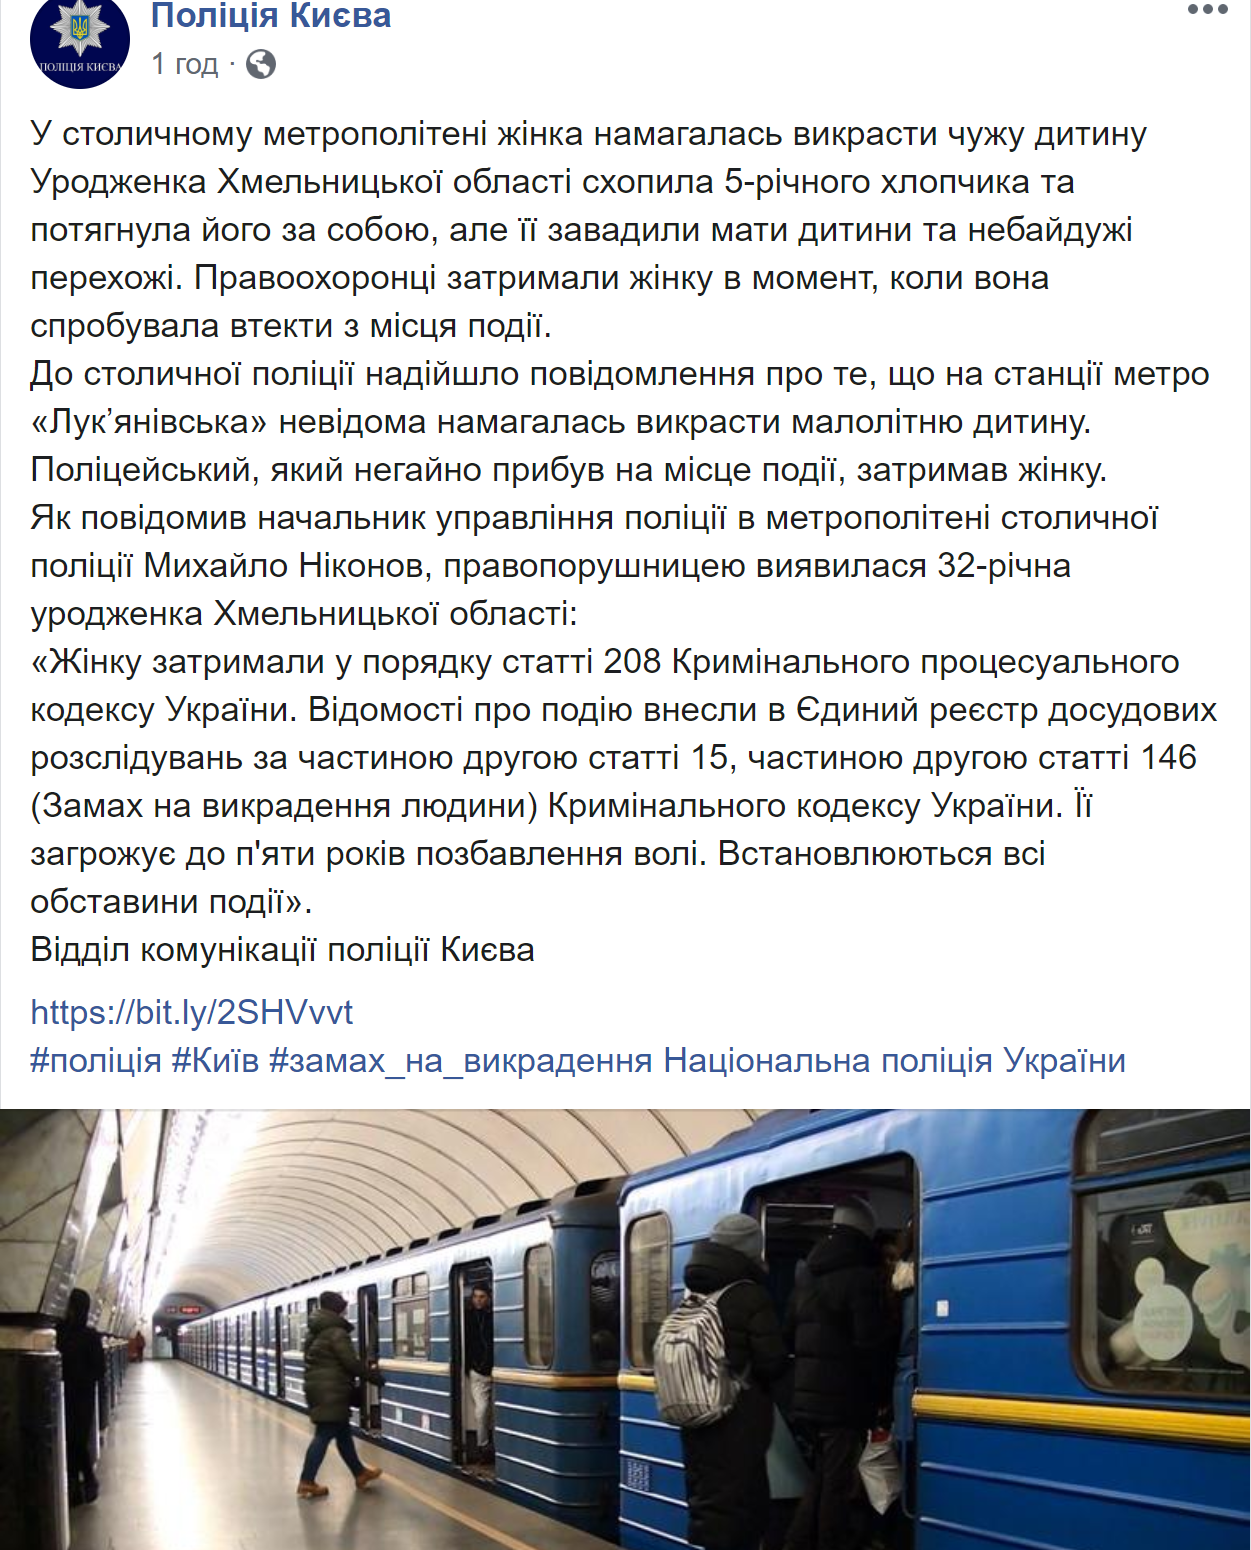 На станции метро в Киеве женщина пыталась похитить ребенка